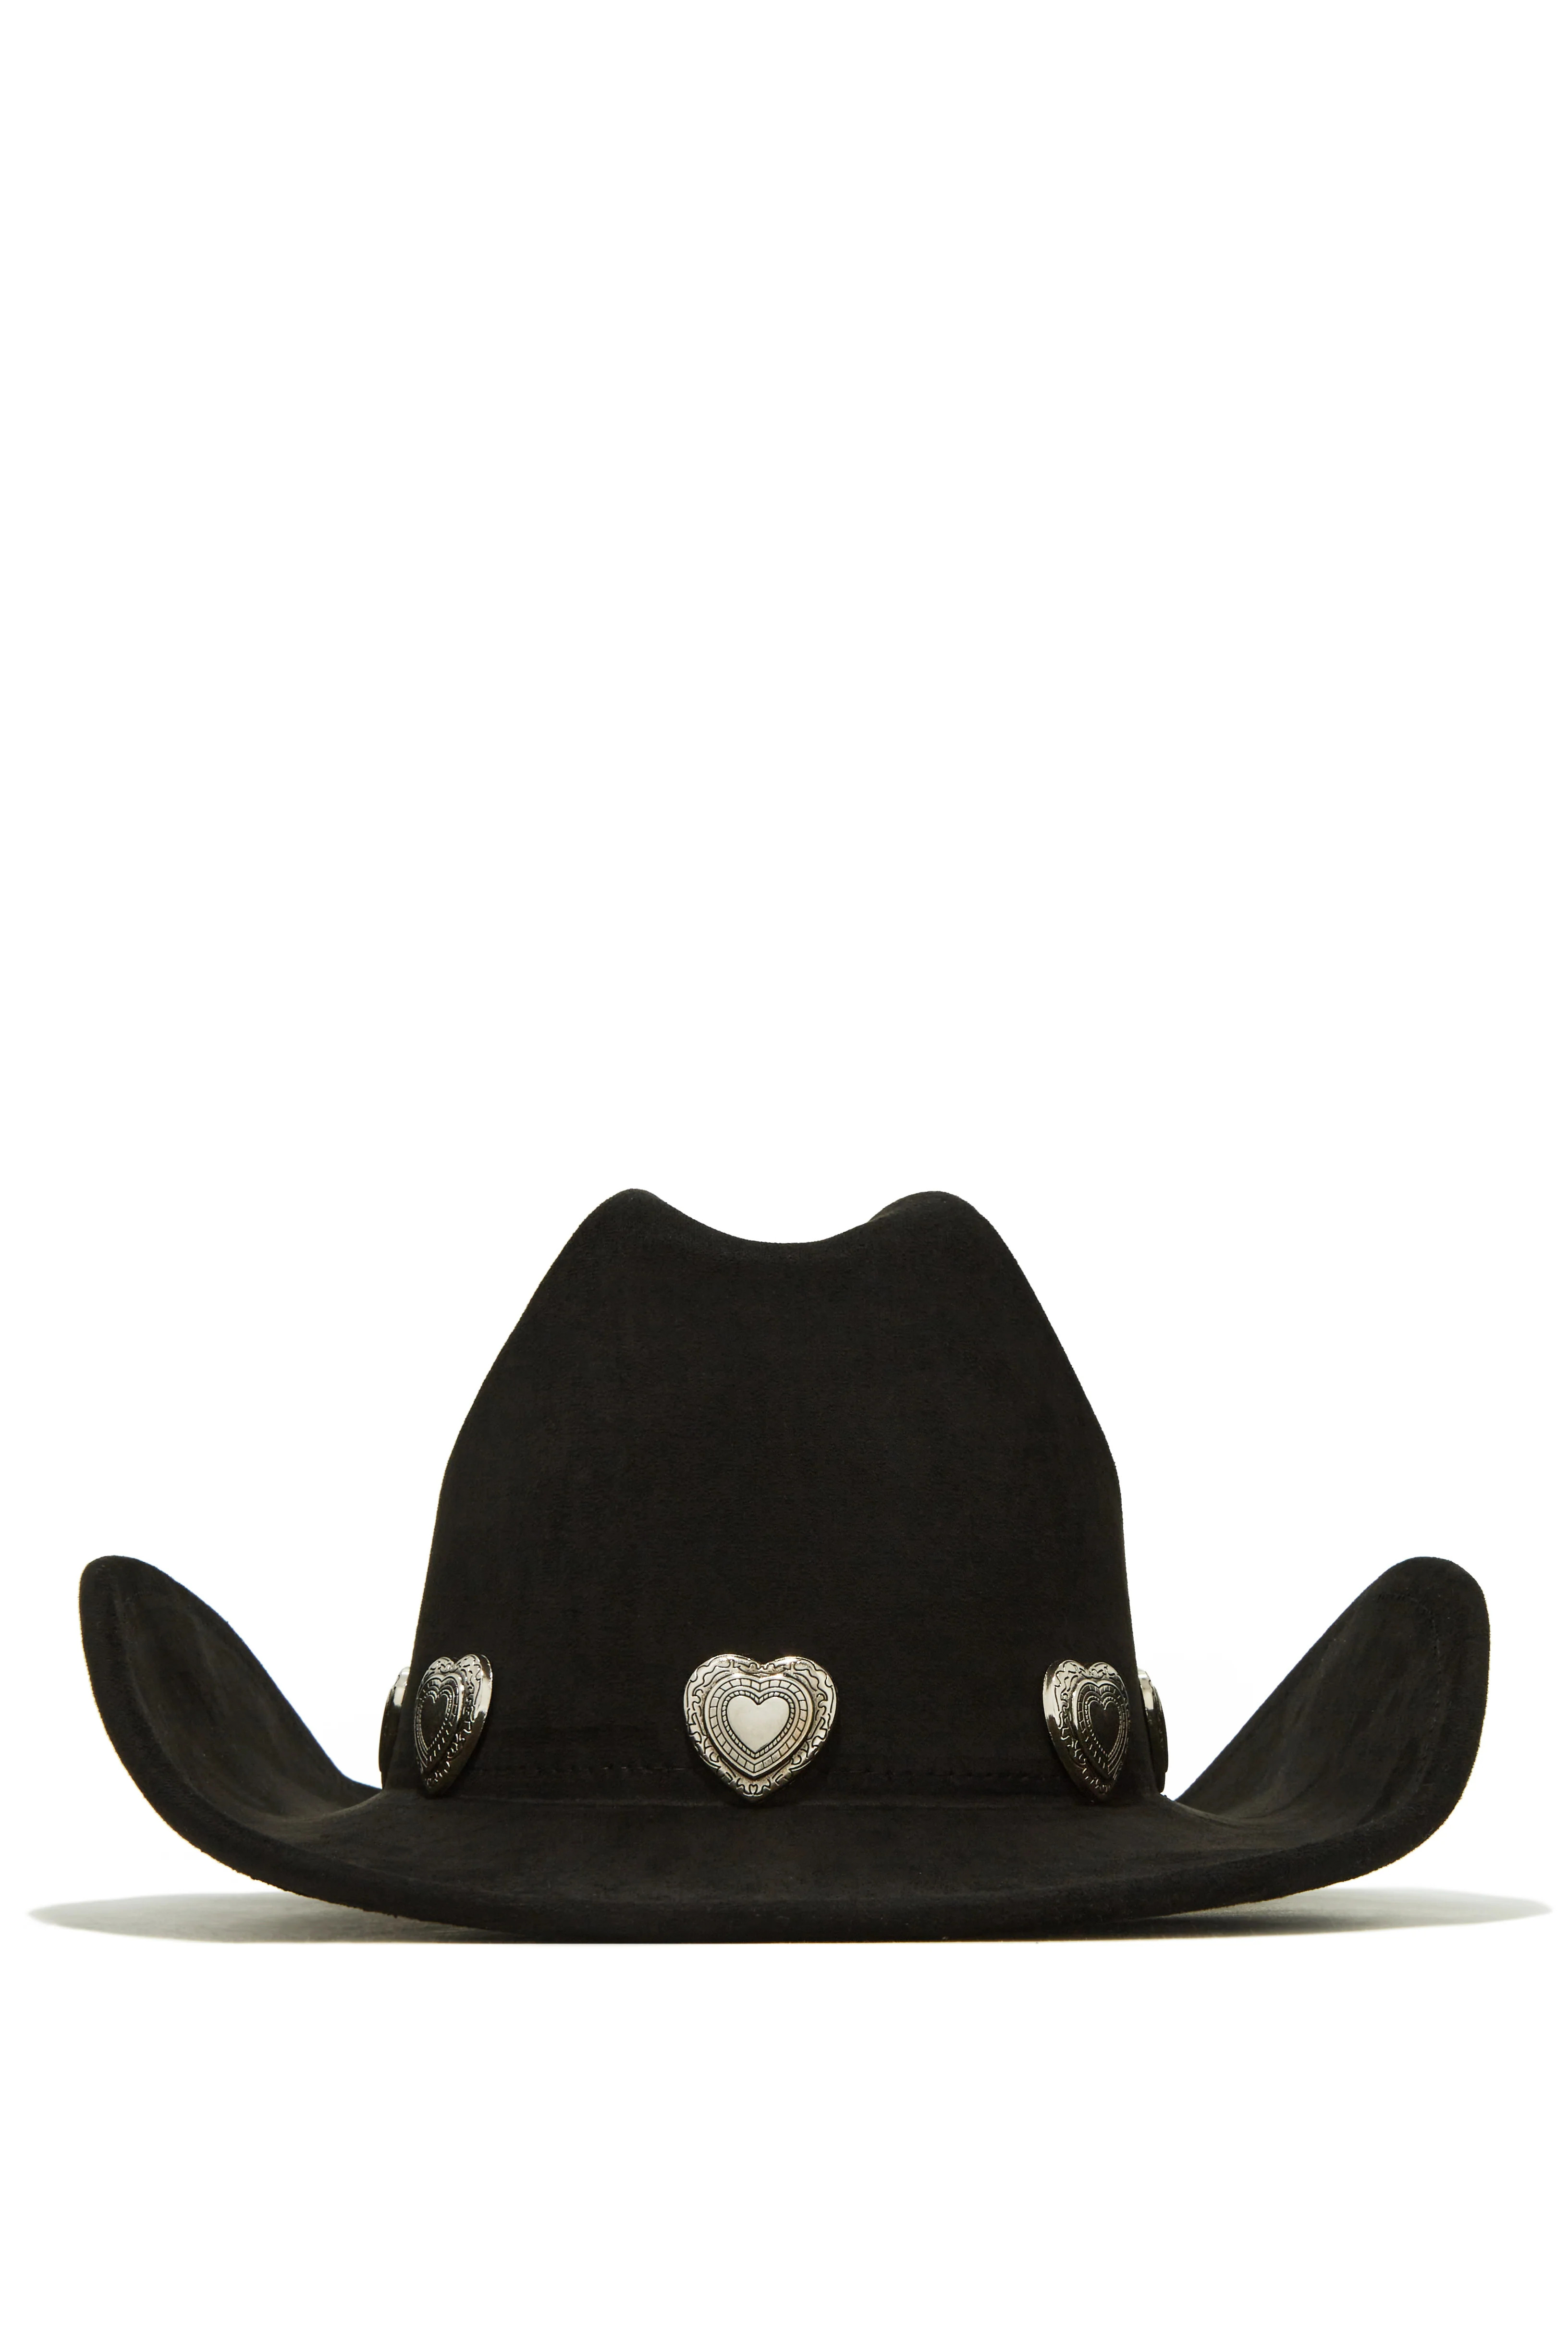 Miss Lola | Heartbreaker Black Heart Pendant Cowgirl Hat | MISS LOLA